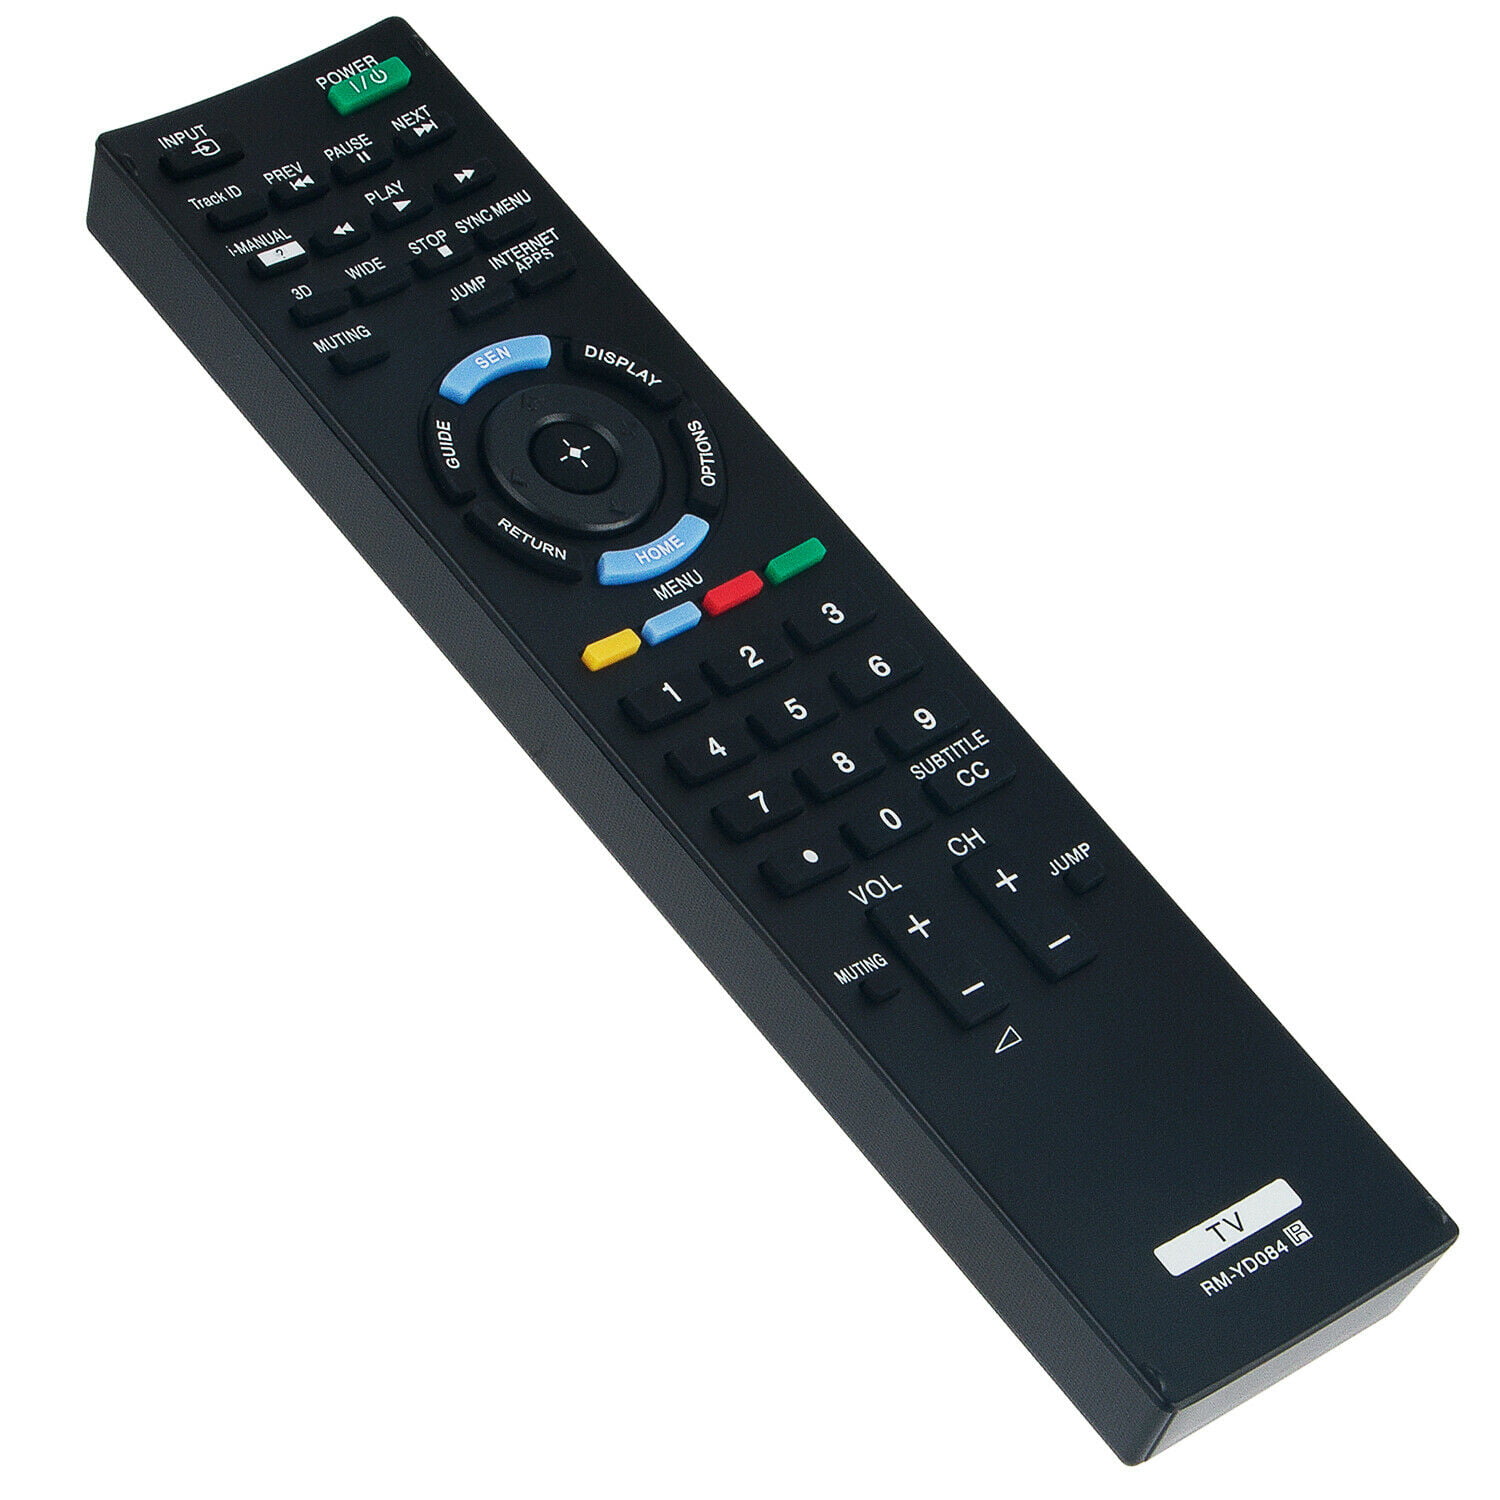 SONY REMOTE TV Remote Control for KDL60R520A KDL60R550A KDL70R520A KDL70R550A 